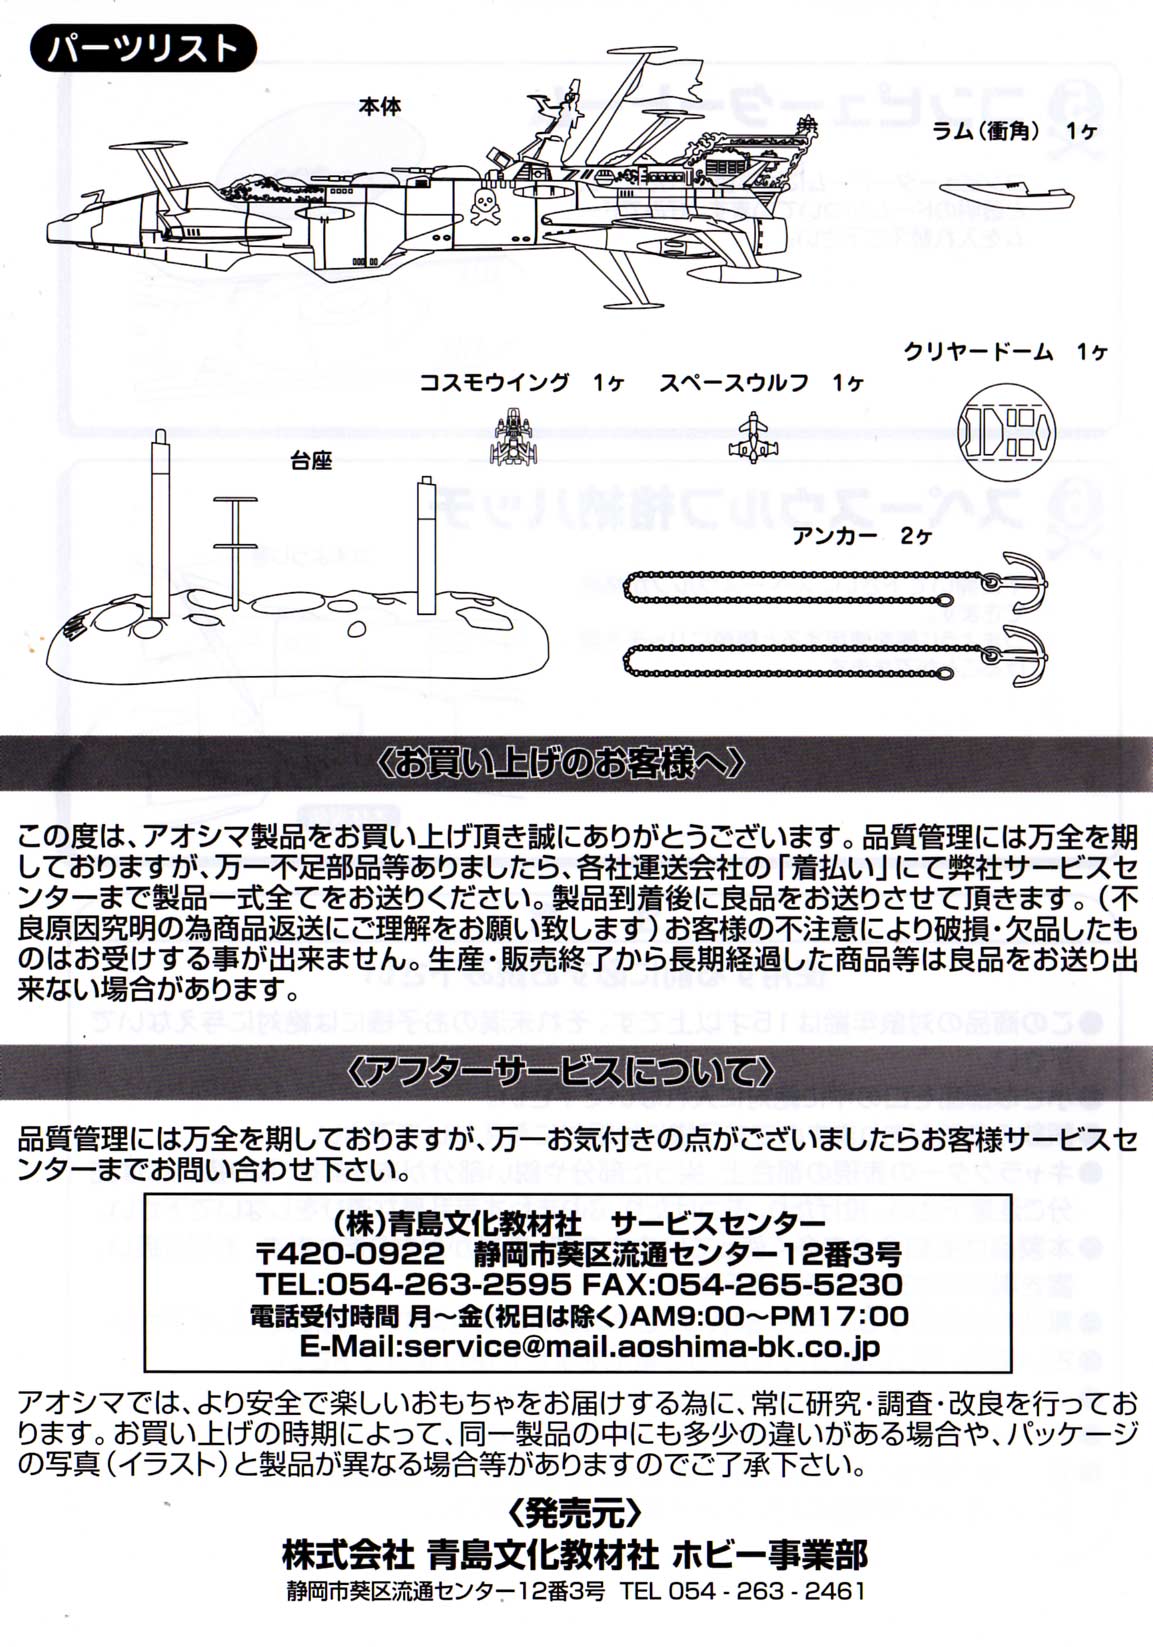 Page 4 de la notice du du Death Shadow d'Aoshima